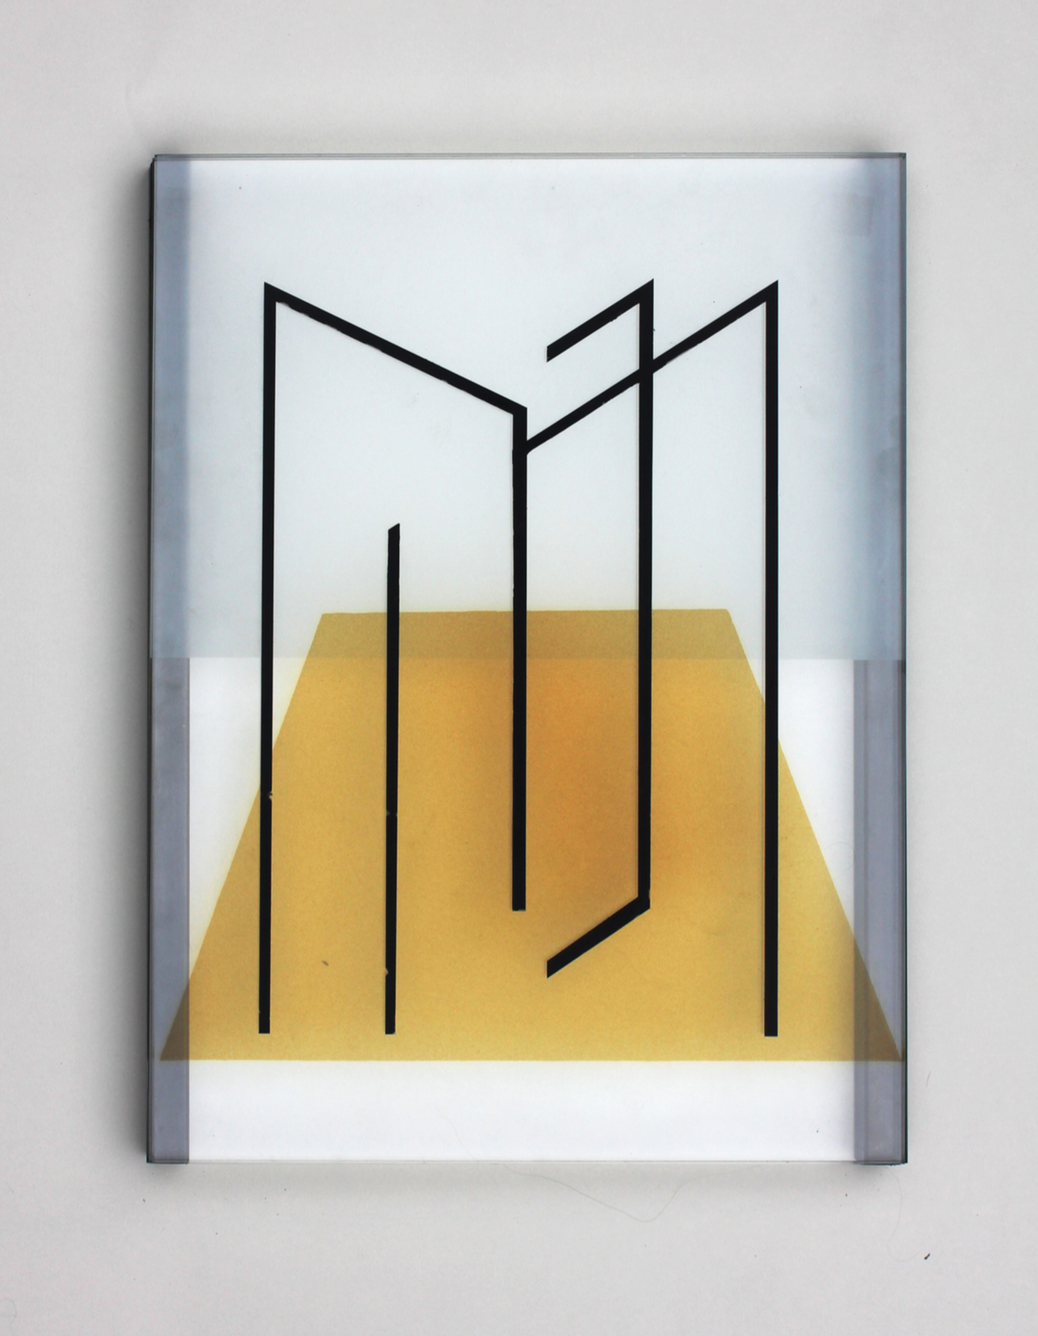 Pia Rondé & Fabien Saleil, Image tranchante MF #02, 2019 verre, cément jaune d’argent, mousseline, grisaille, acier 40 x 30 cm. Unique, courtesy galerie Valeria Cetraro.